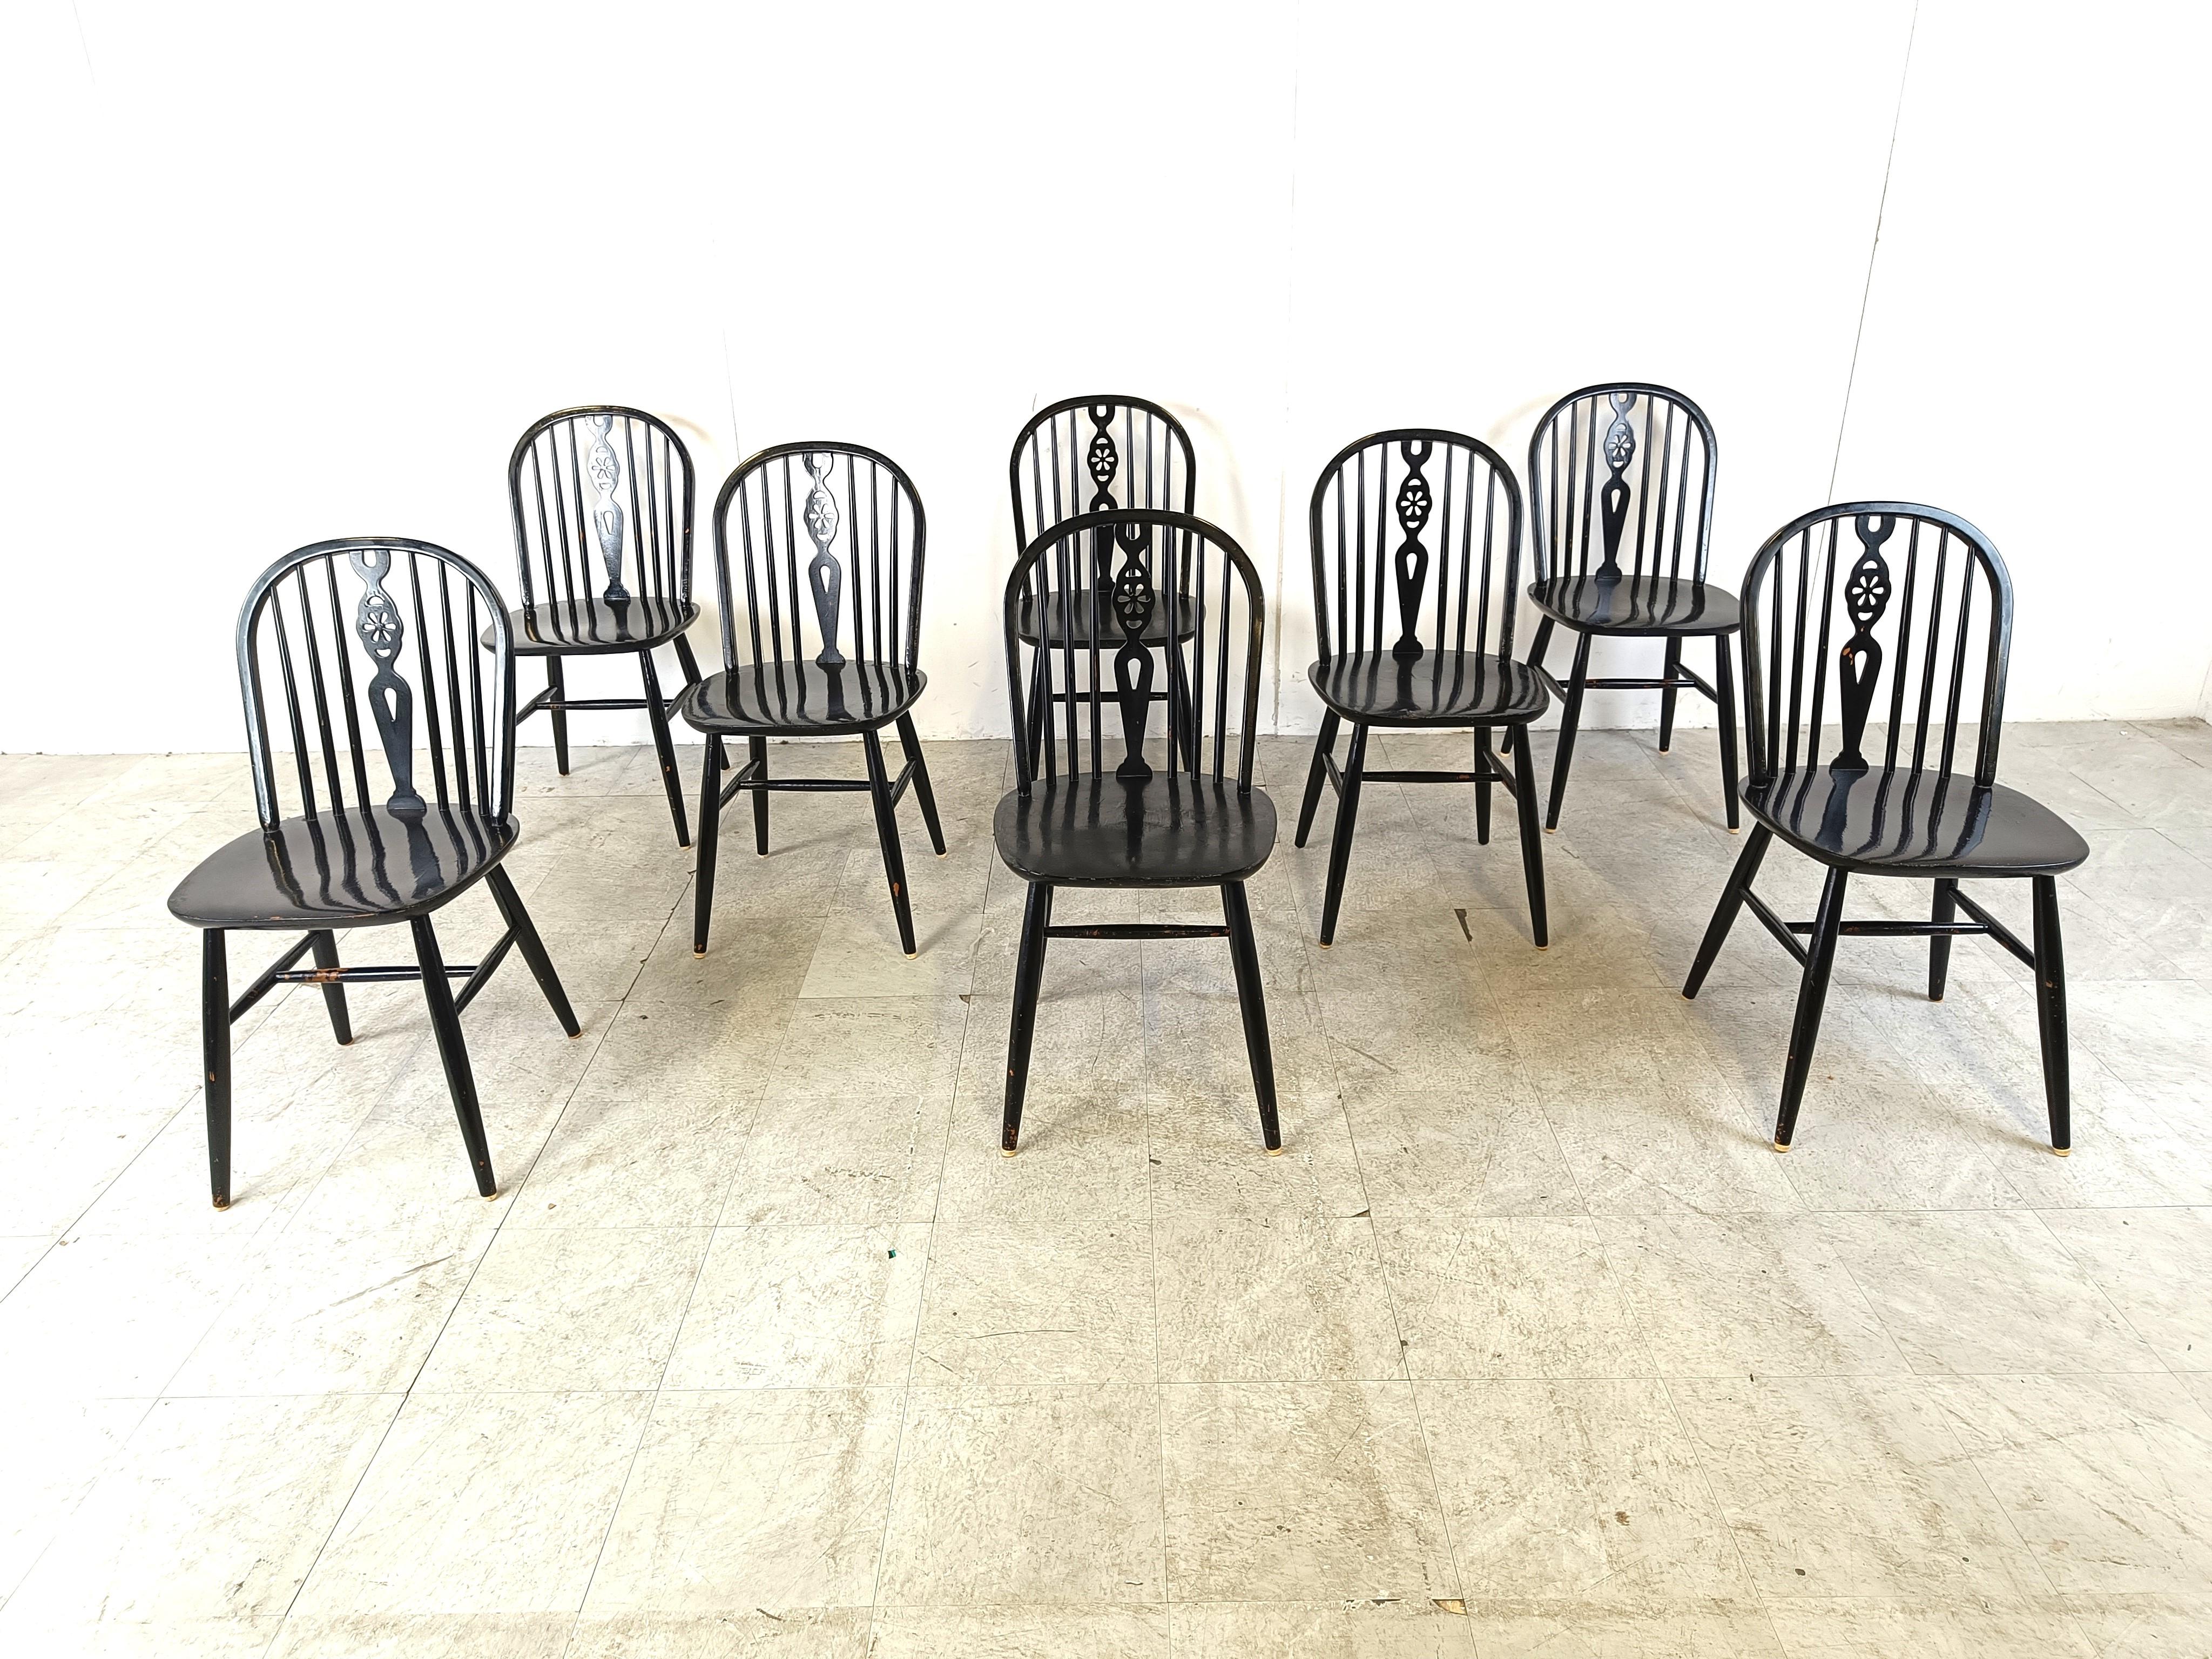 Ensemble de 8 chaises de salle à manger Ercol à dossier en fuseau.

Les chaises sont magnifiquement fabriquées avec le souci du détail et sont constituées de cadres en bois ébonisé.

Des pièces intemporelles qui donnent une touche antique/vintage à